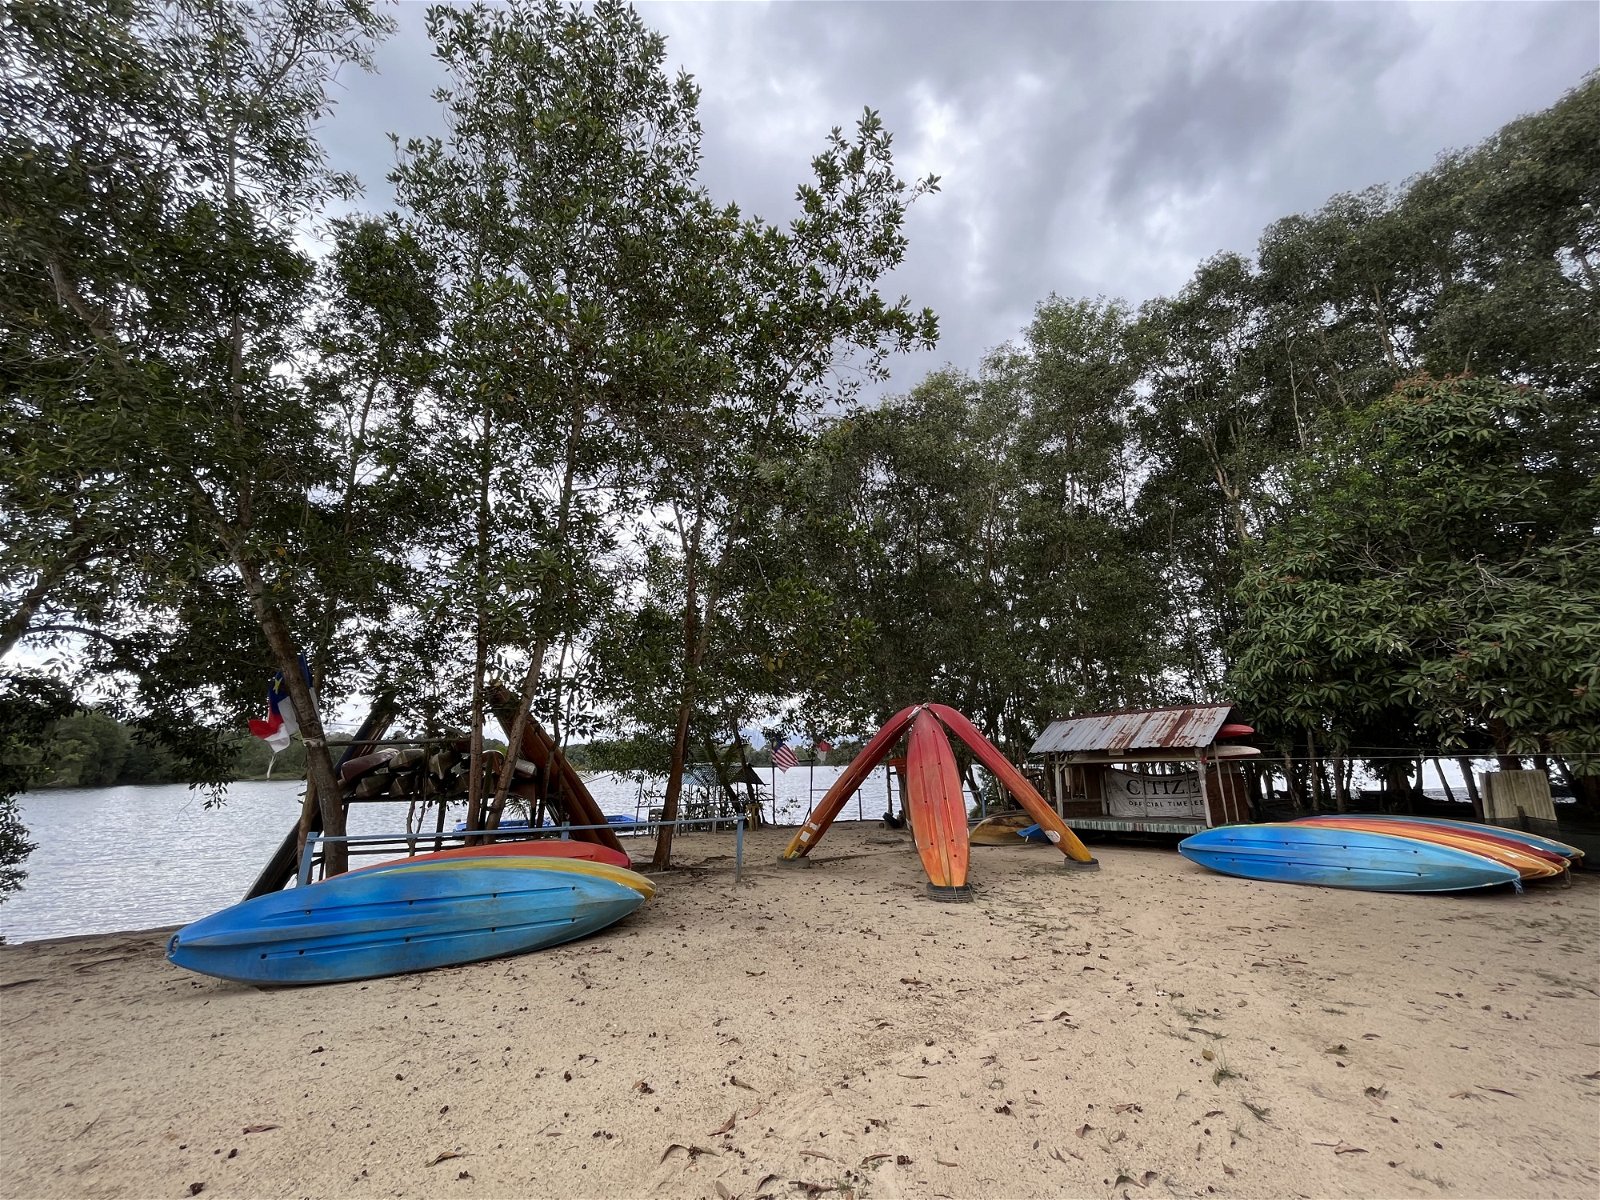 营地有划艇等水上活动用具供租借，并提供专业解说确保游客的安全。